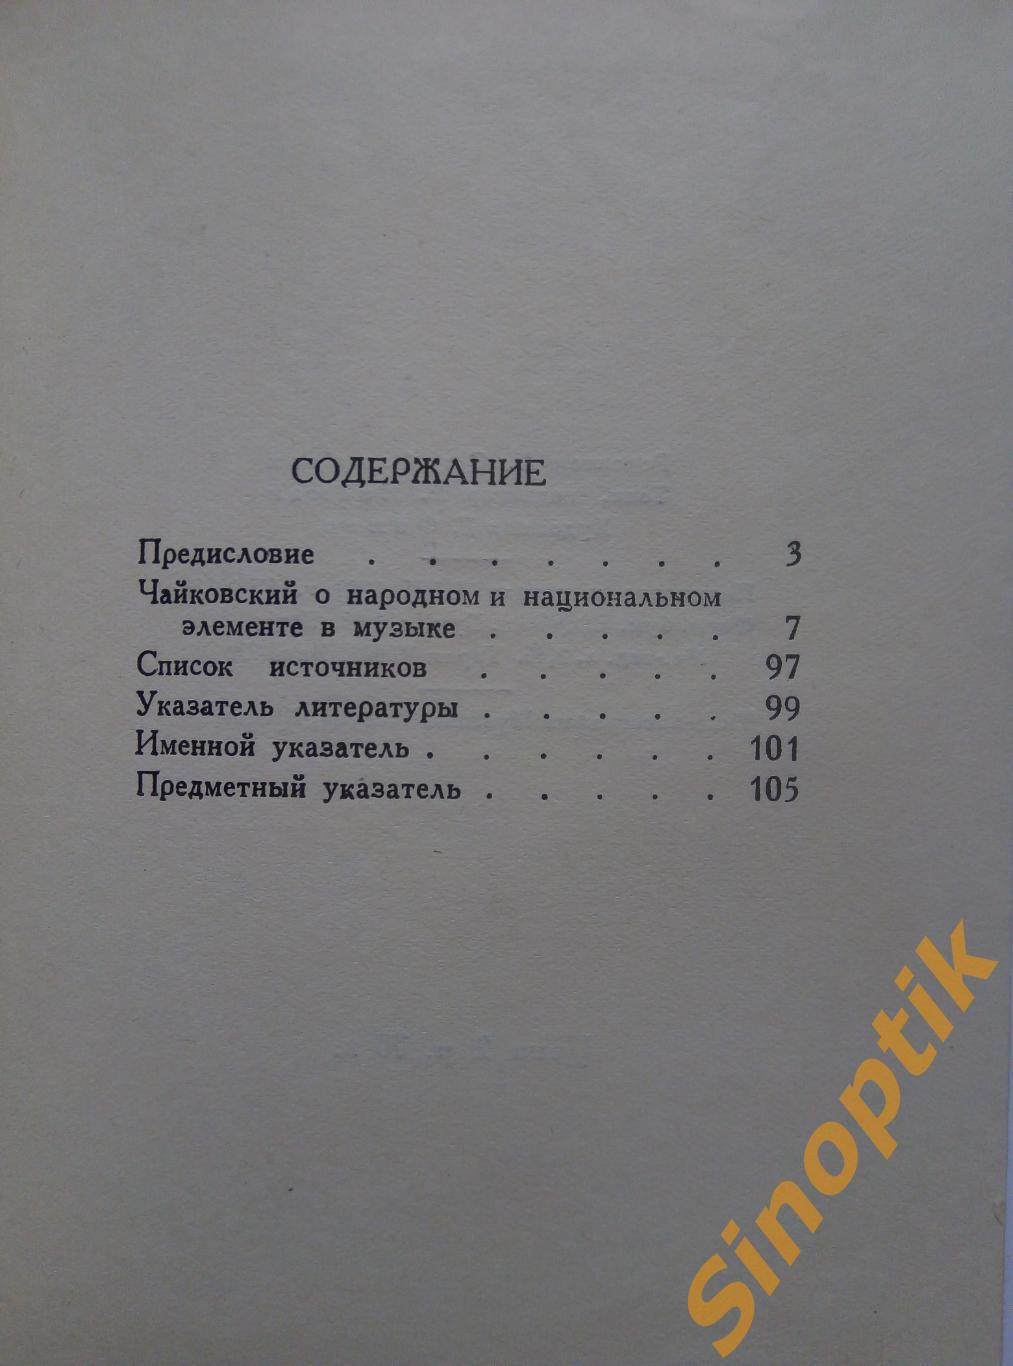 П. И. Чайковский. О народном и национальном элементе в музыке. 1952 2